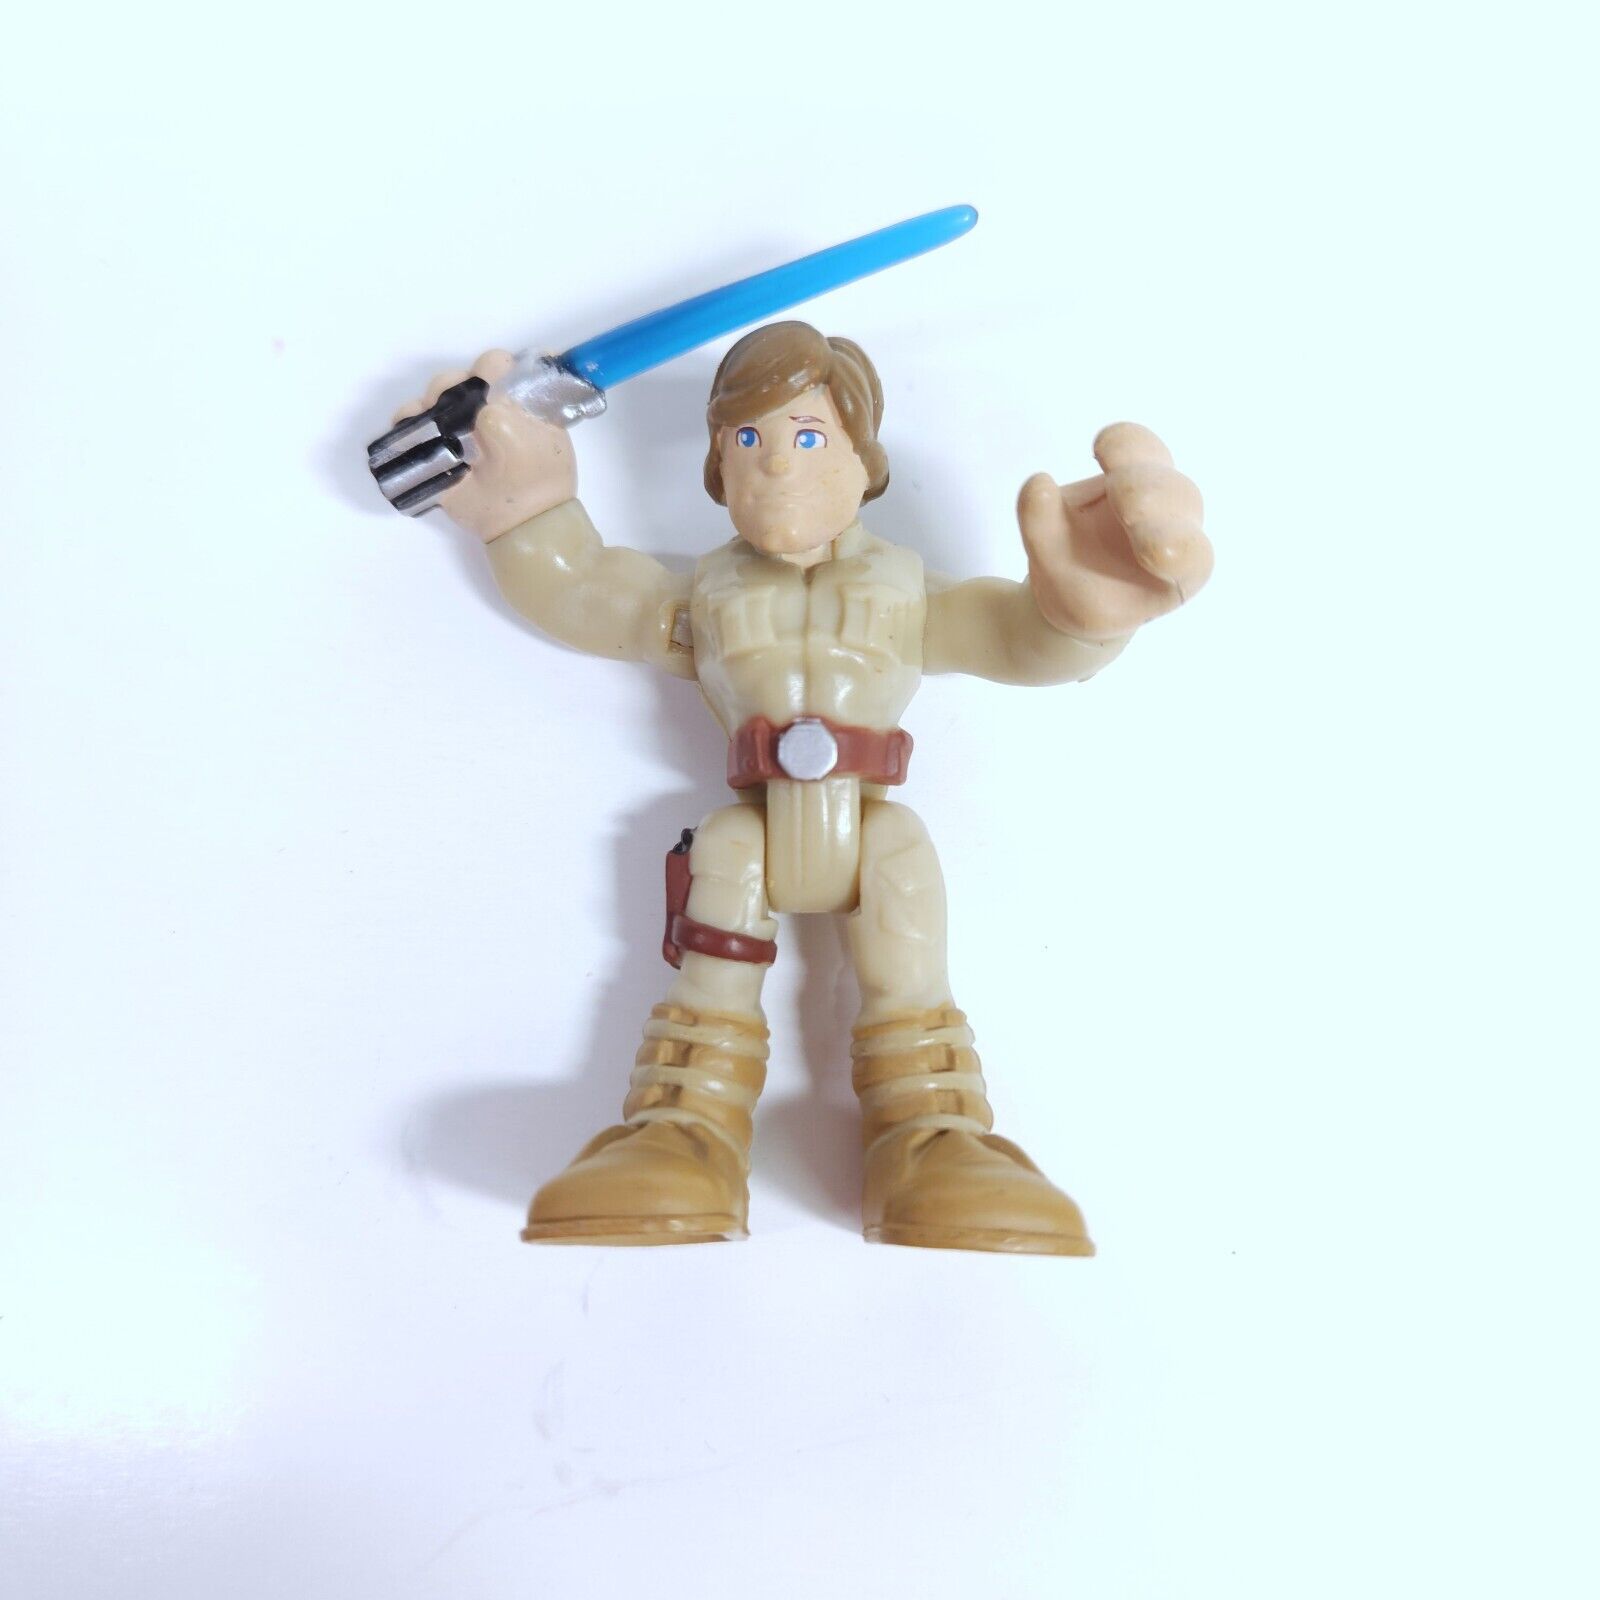 Star Wars Playskool Heroes Jedi Force Luke Skywalker Action Figure 2011 Hasbro